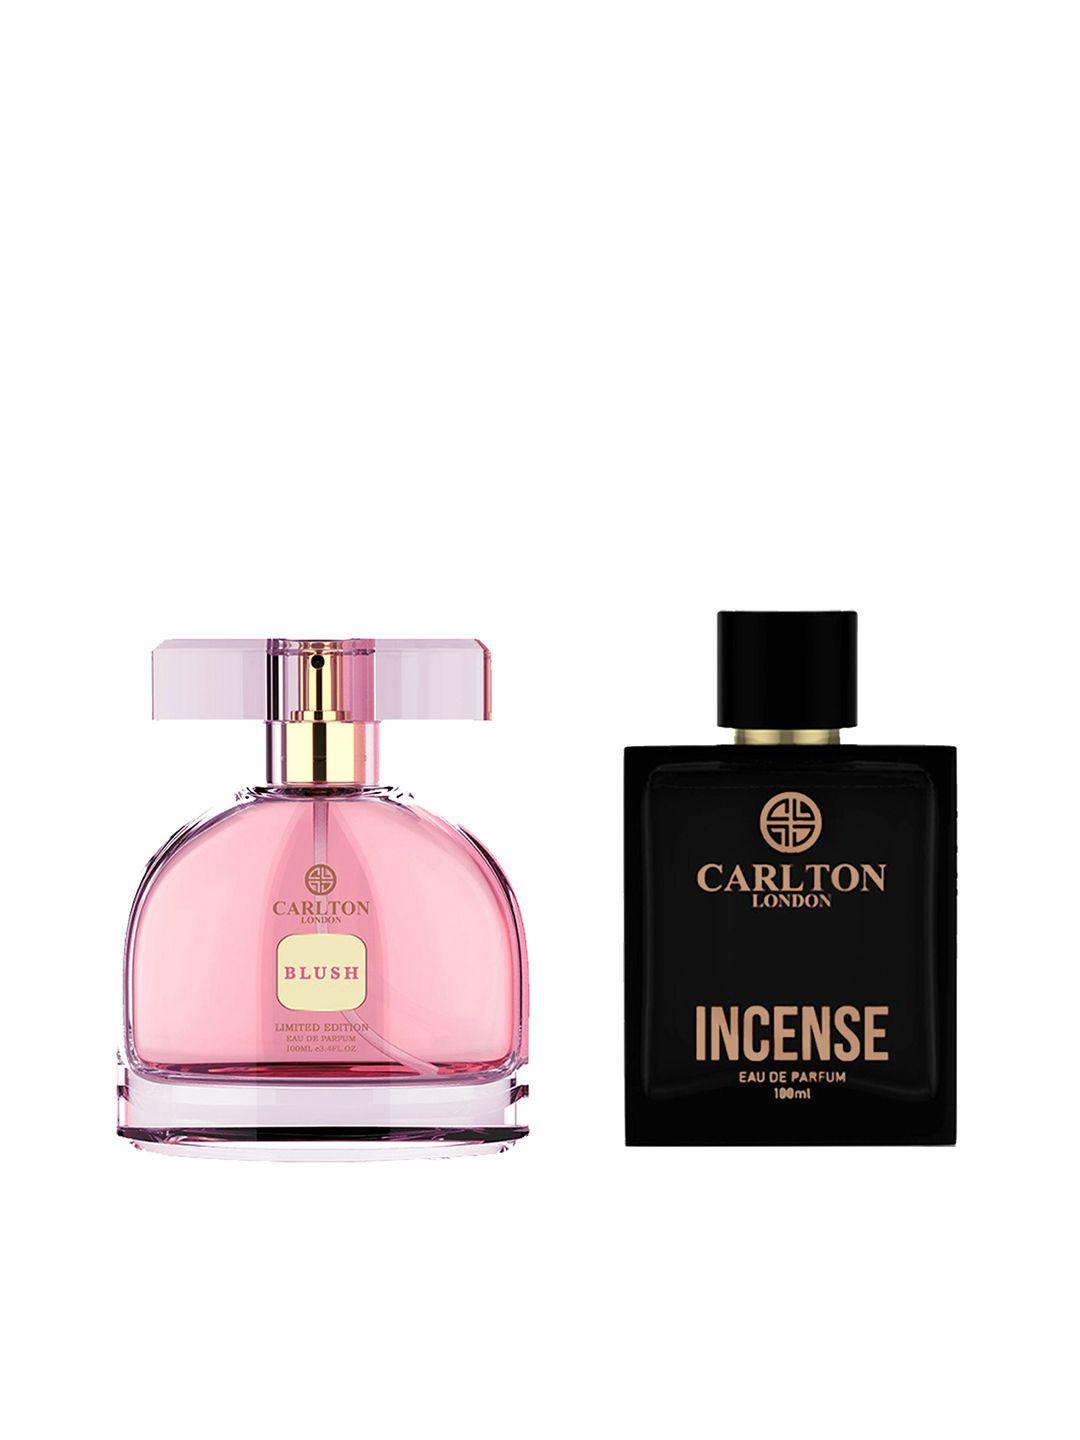 carlton london set of men incense & women blush limited edition eau de parfum - 100ml each